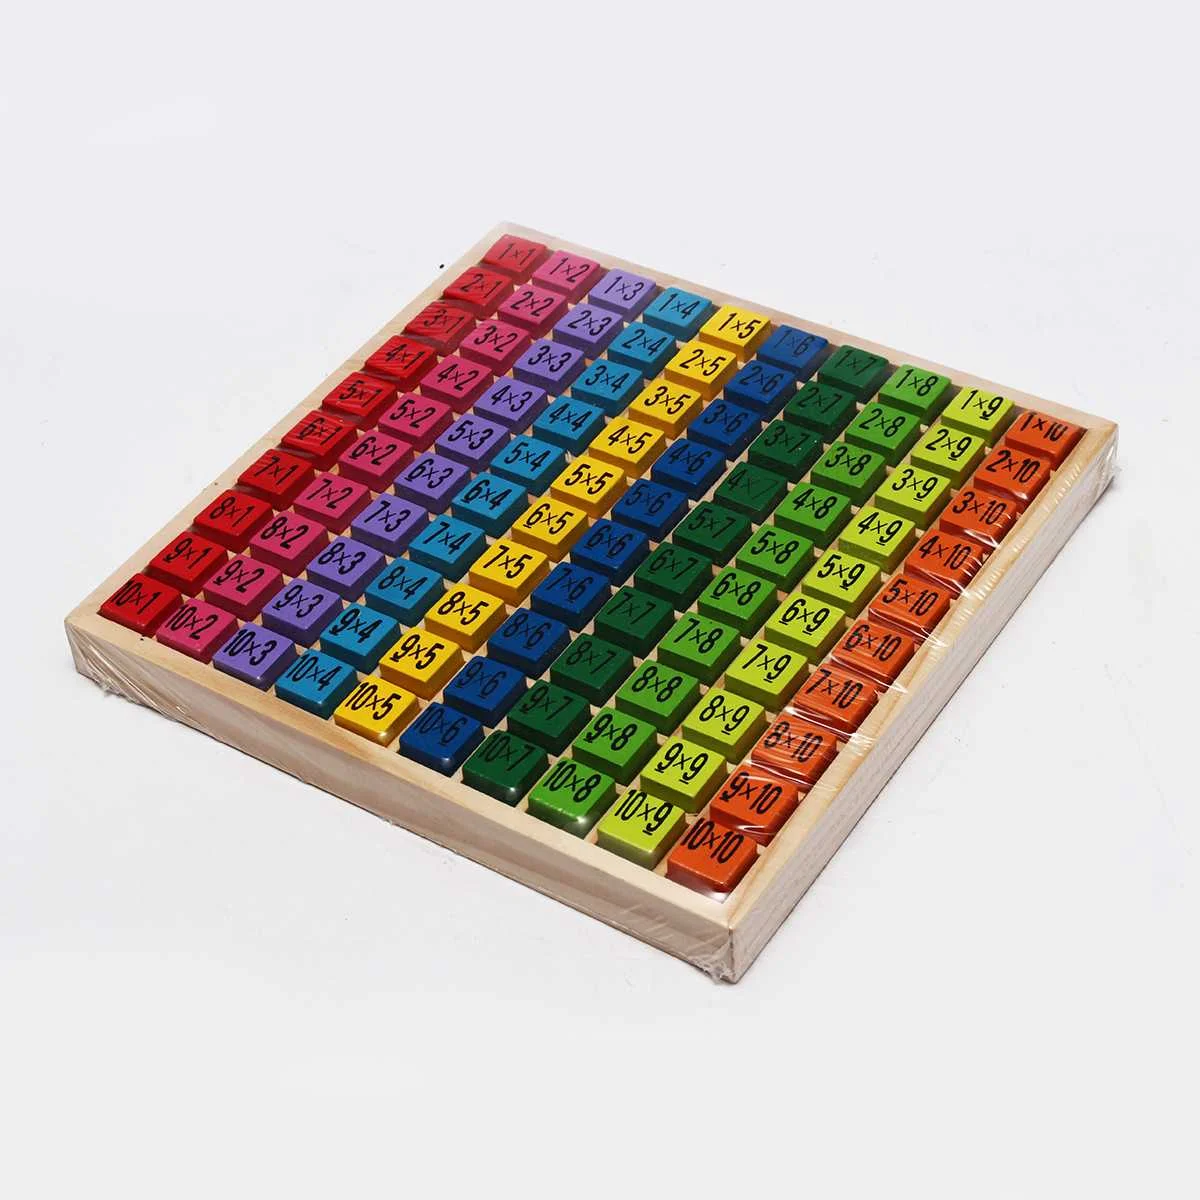 Развивающие деревянные настольные детские математические Обучающие игрушки блоки детские подарки математические игрушки IQ развивающие красочные 19x19 см